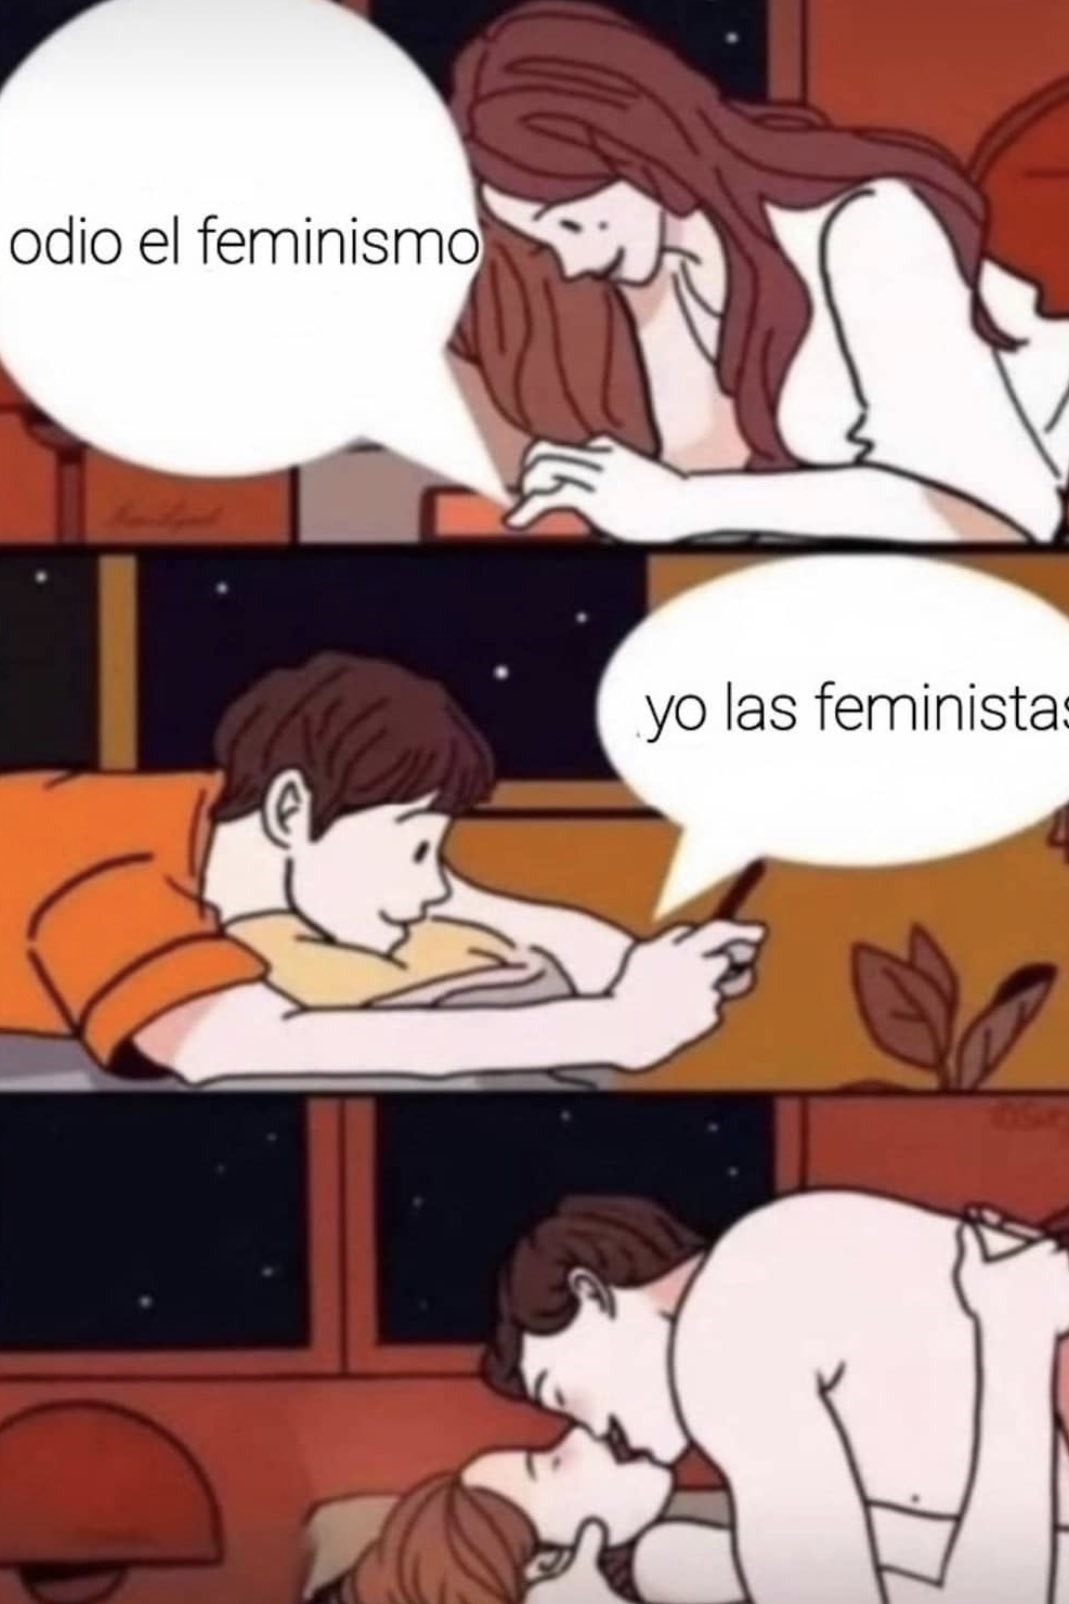 Odio al feminismo, yo a las feministas - meme